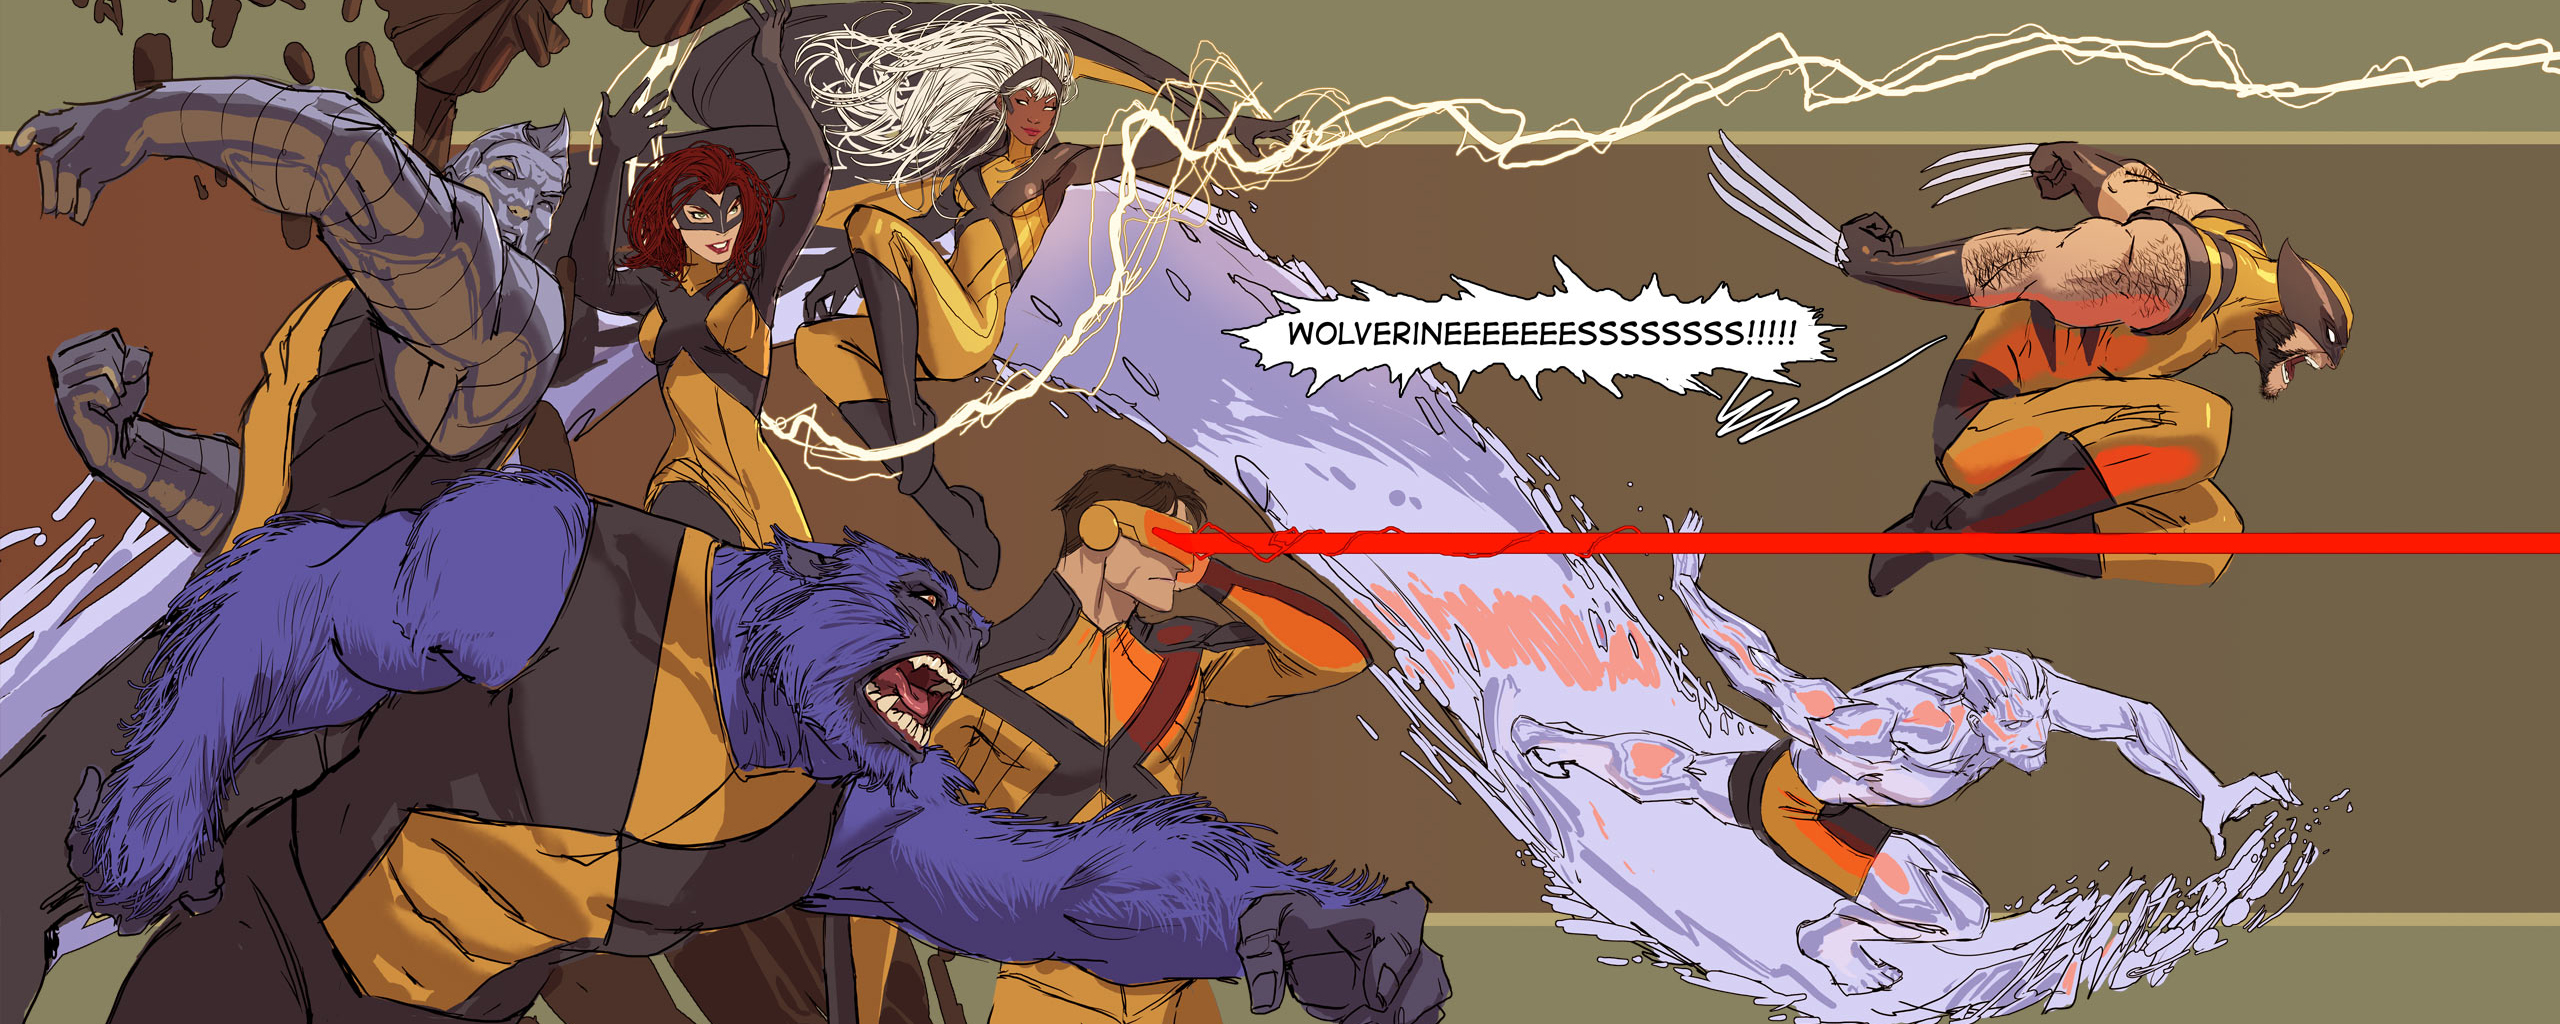 x men, Marvel, Wolverine, Beast, Cyclops, Storm Wallpaper